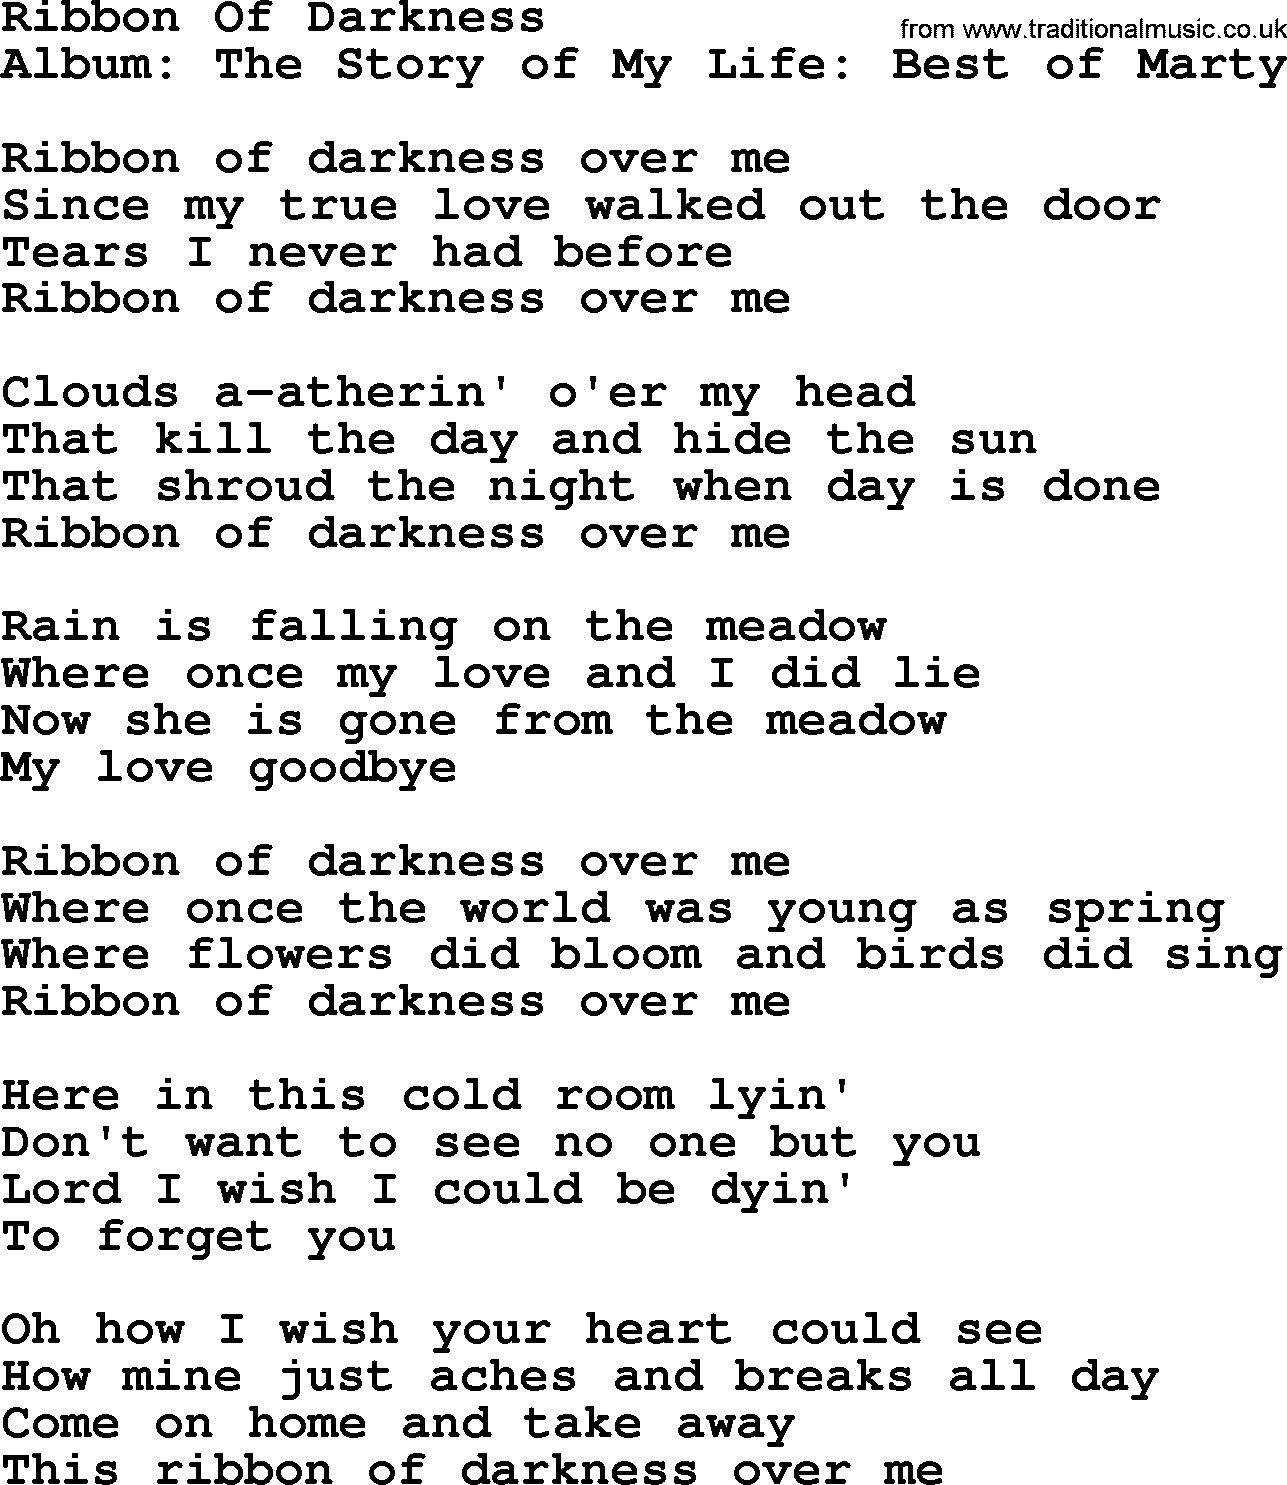 Marty Robbins song: Ribbon Of Darkness, lyrics